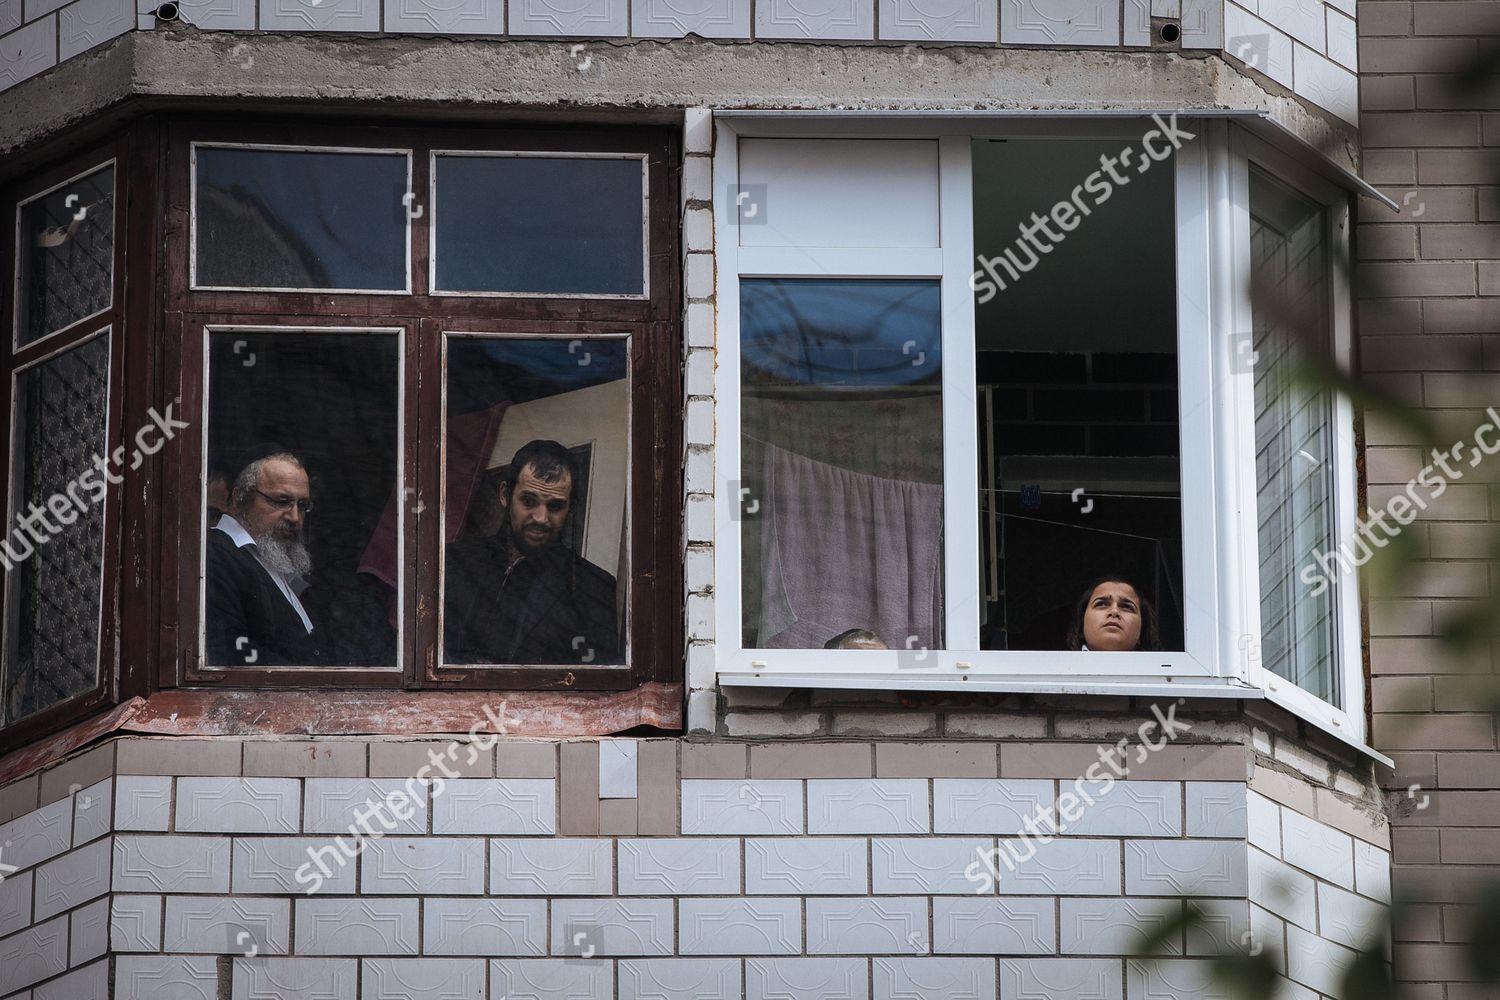 ukraine-orthodox-jews-rosh-hashana-sep-2014-shutterstock-editorial-7972889h.jpg